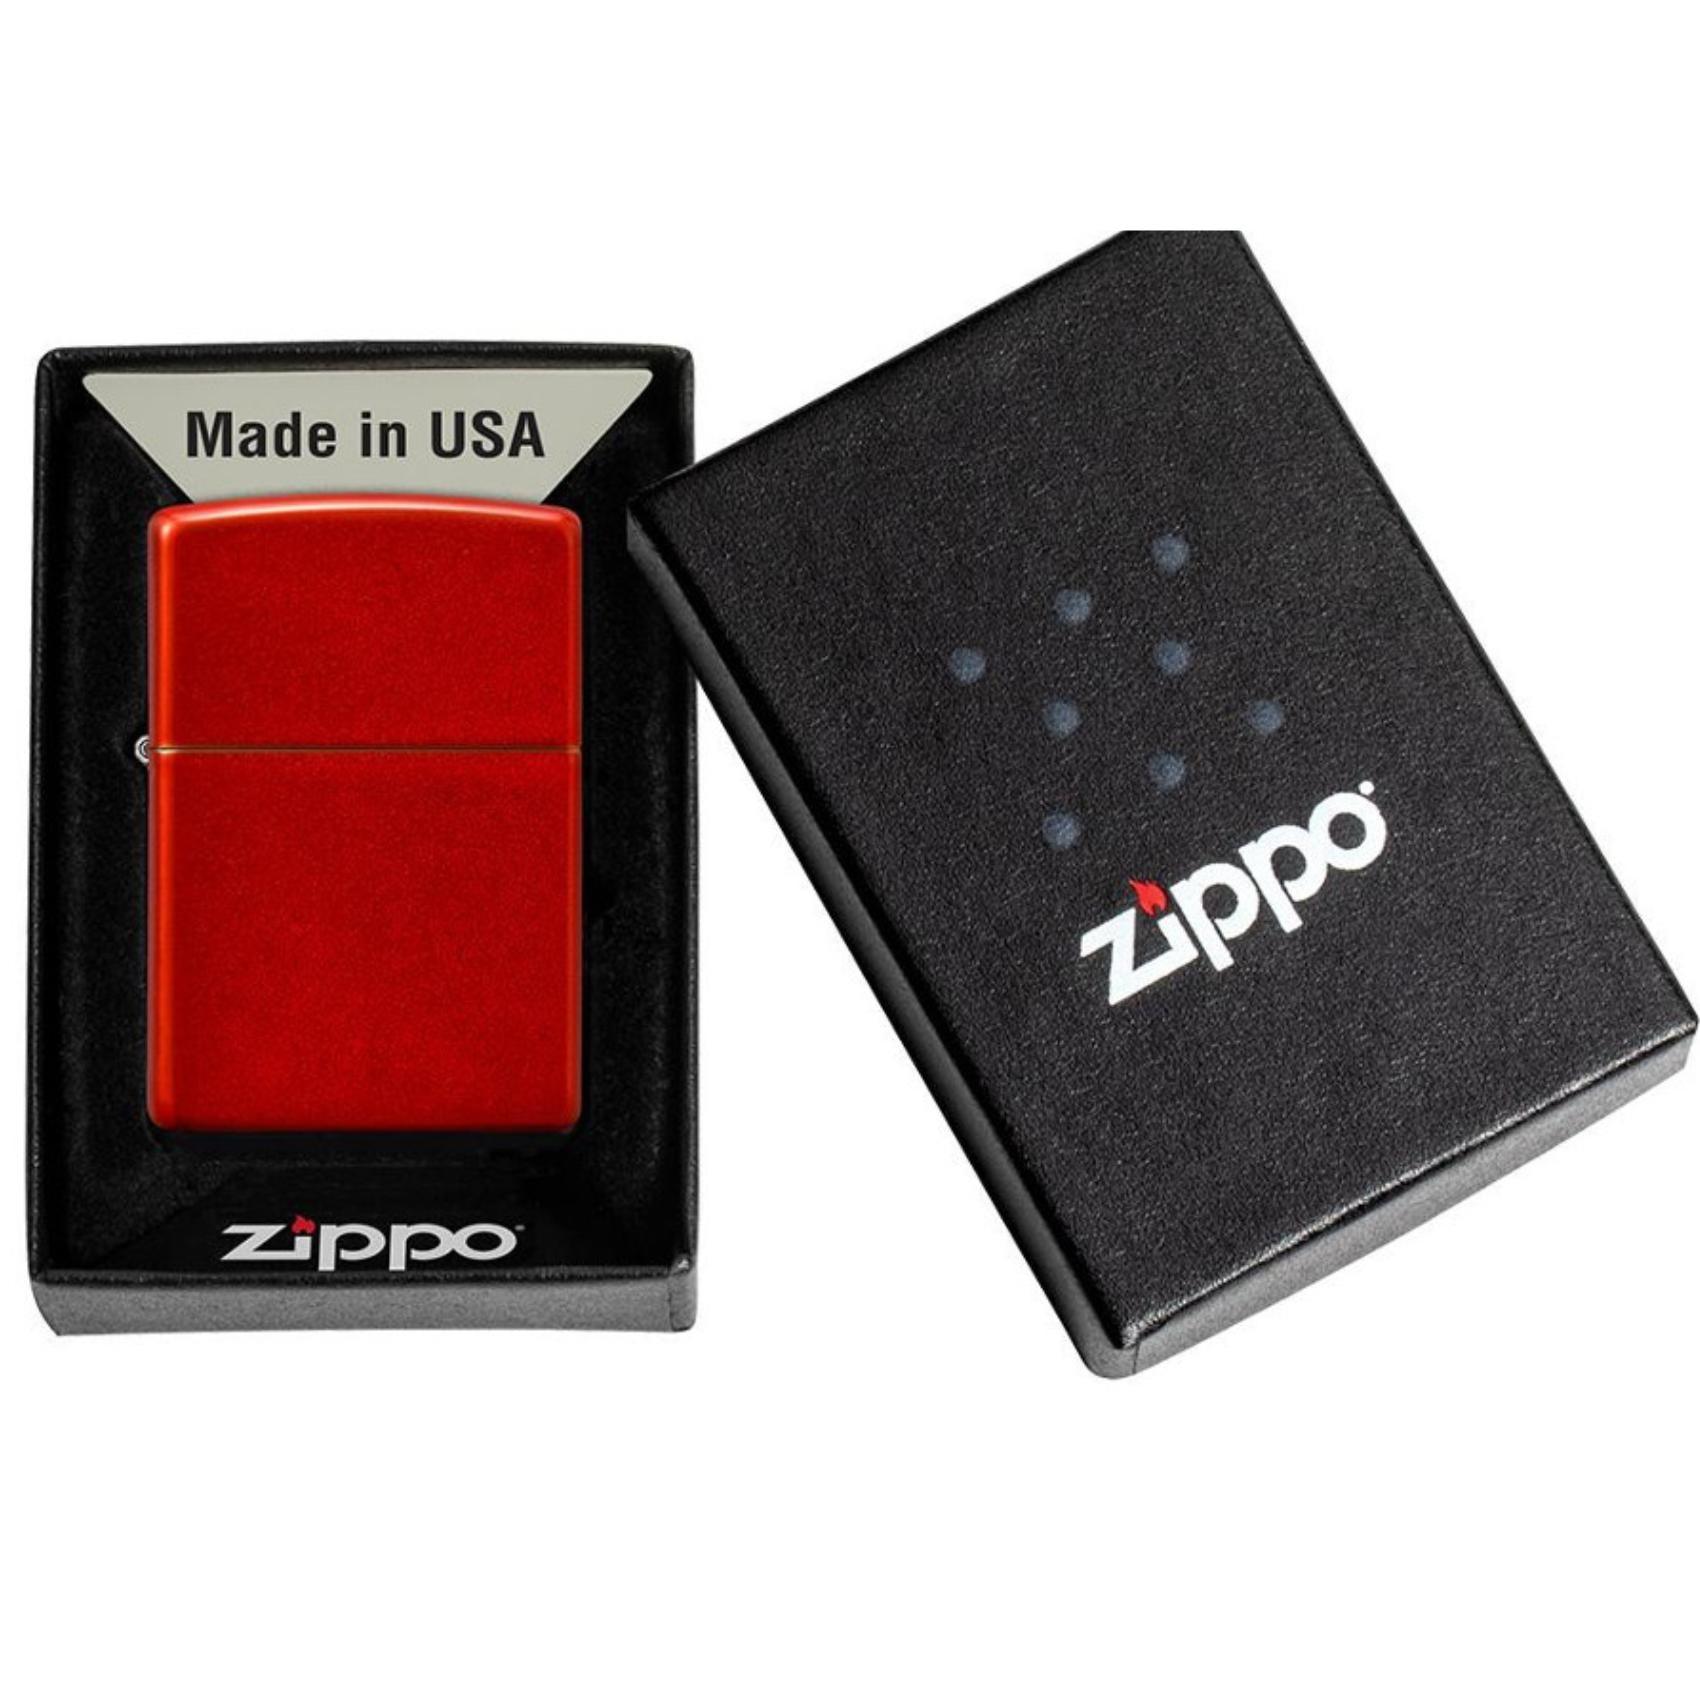 Αντιανεμικός αναπτήρας Zippo Classic Metallic Red 49475 σε κόκκινο χρώμα με ματ υψή και δυνατότητα χαράγματος για ένα προσωποποιημένο δώρο.